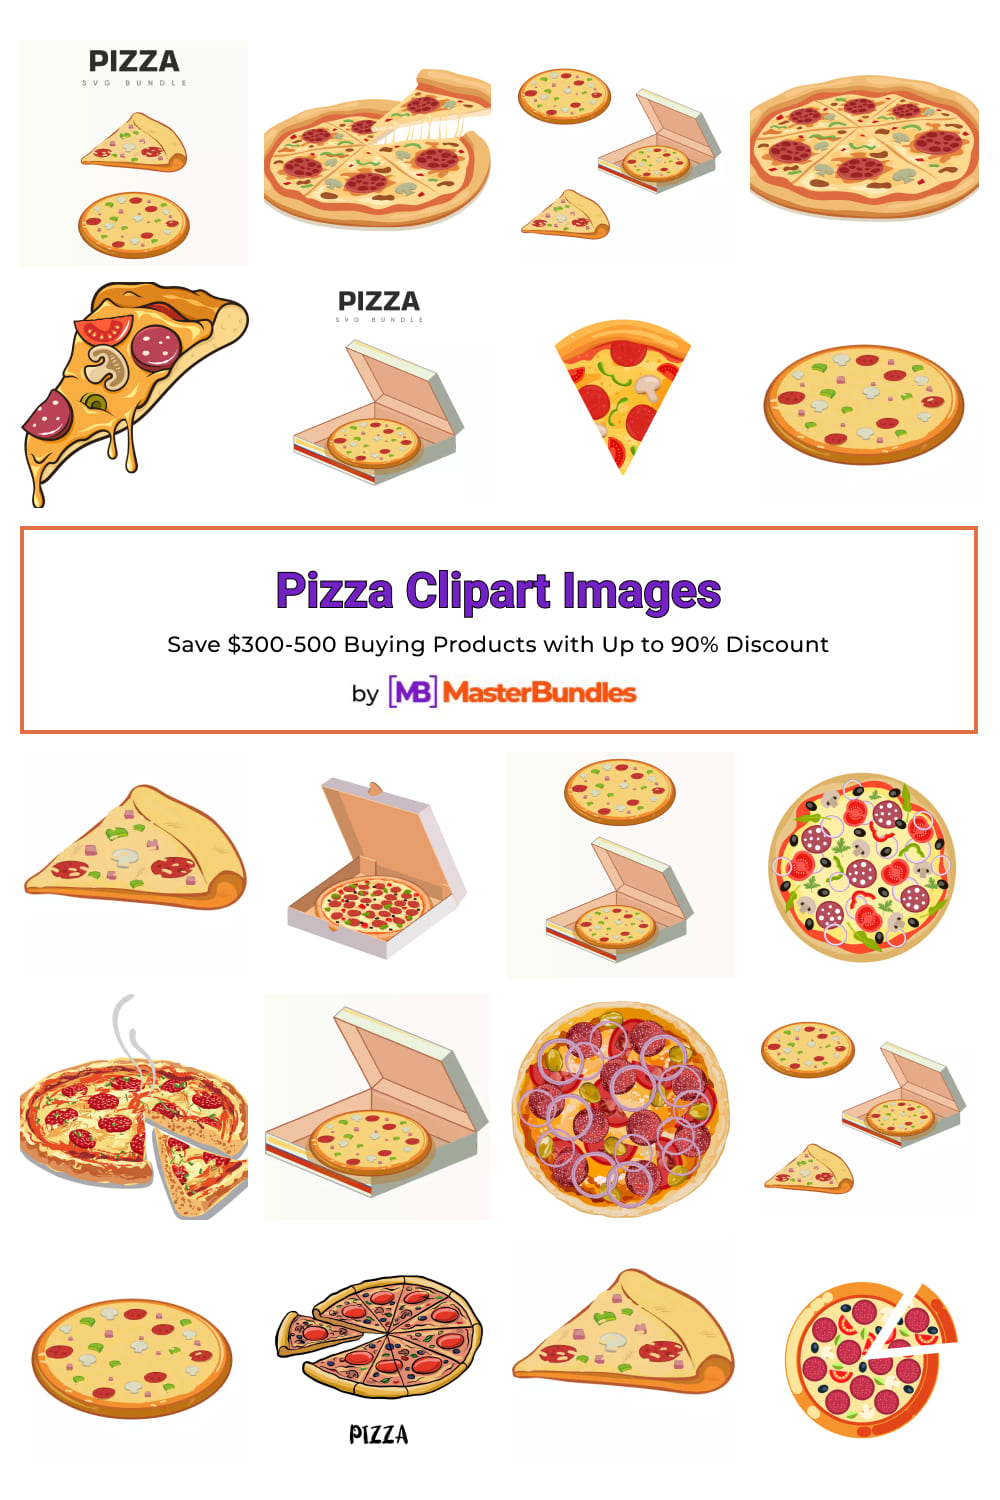 Pizza clipart images Pinterest.